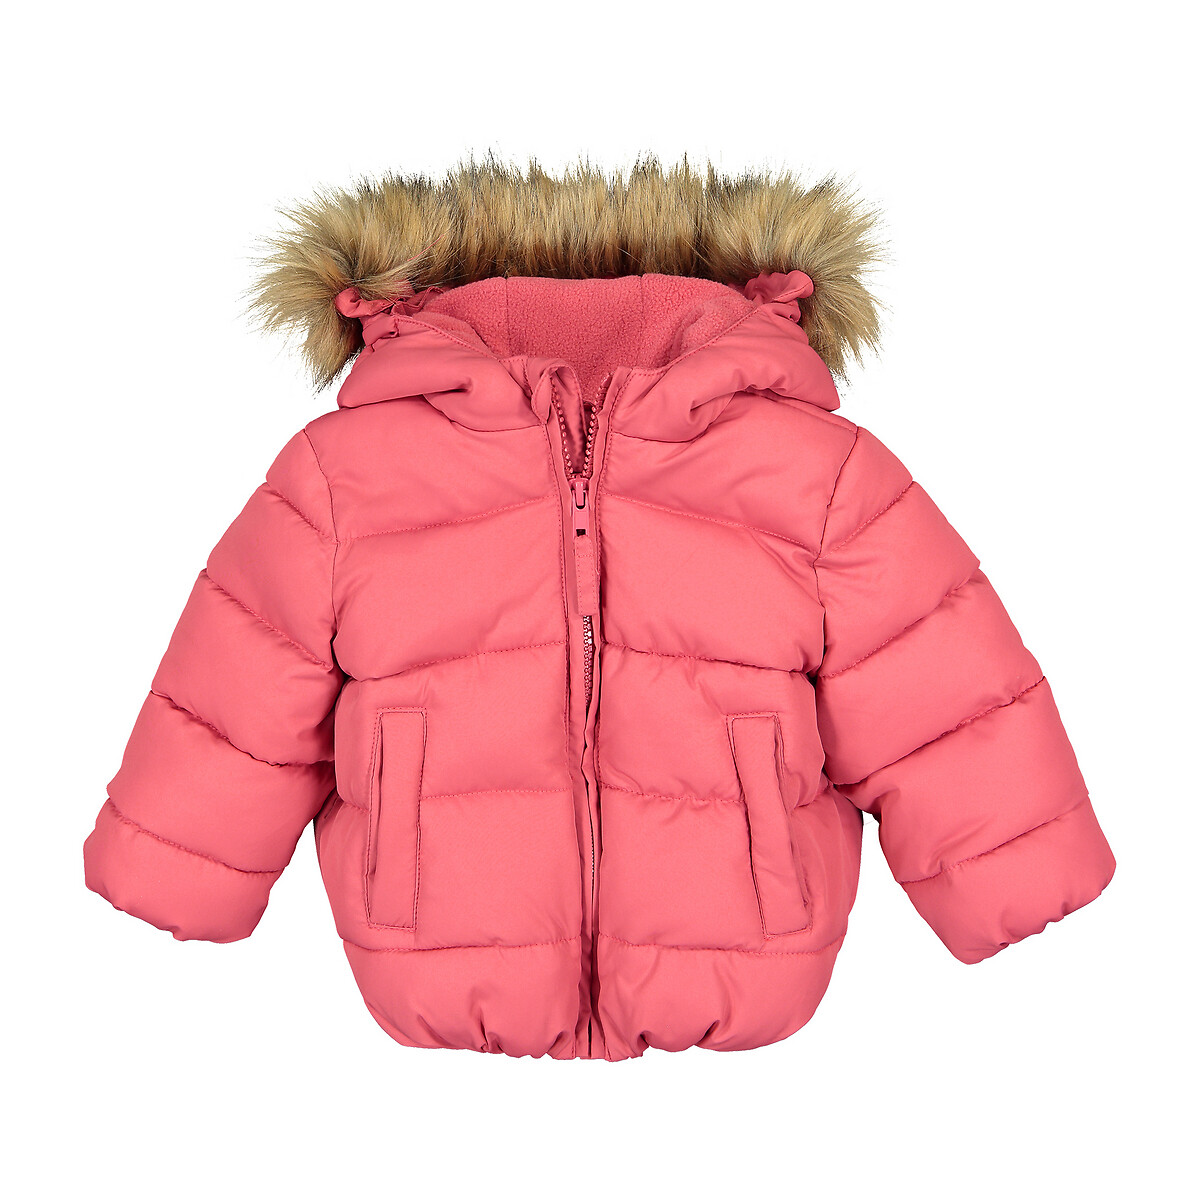 Куртка Стеганая с капюшоном 3 мес - 4 года 9 мес. - 71 см розовый